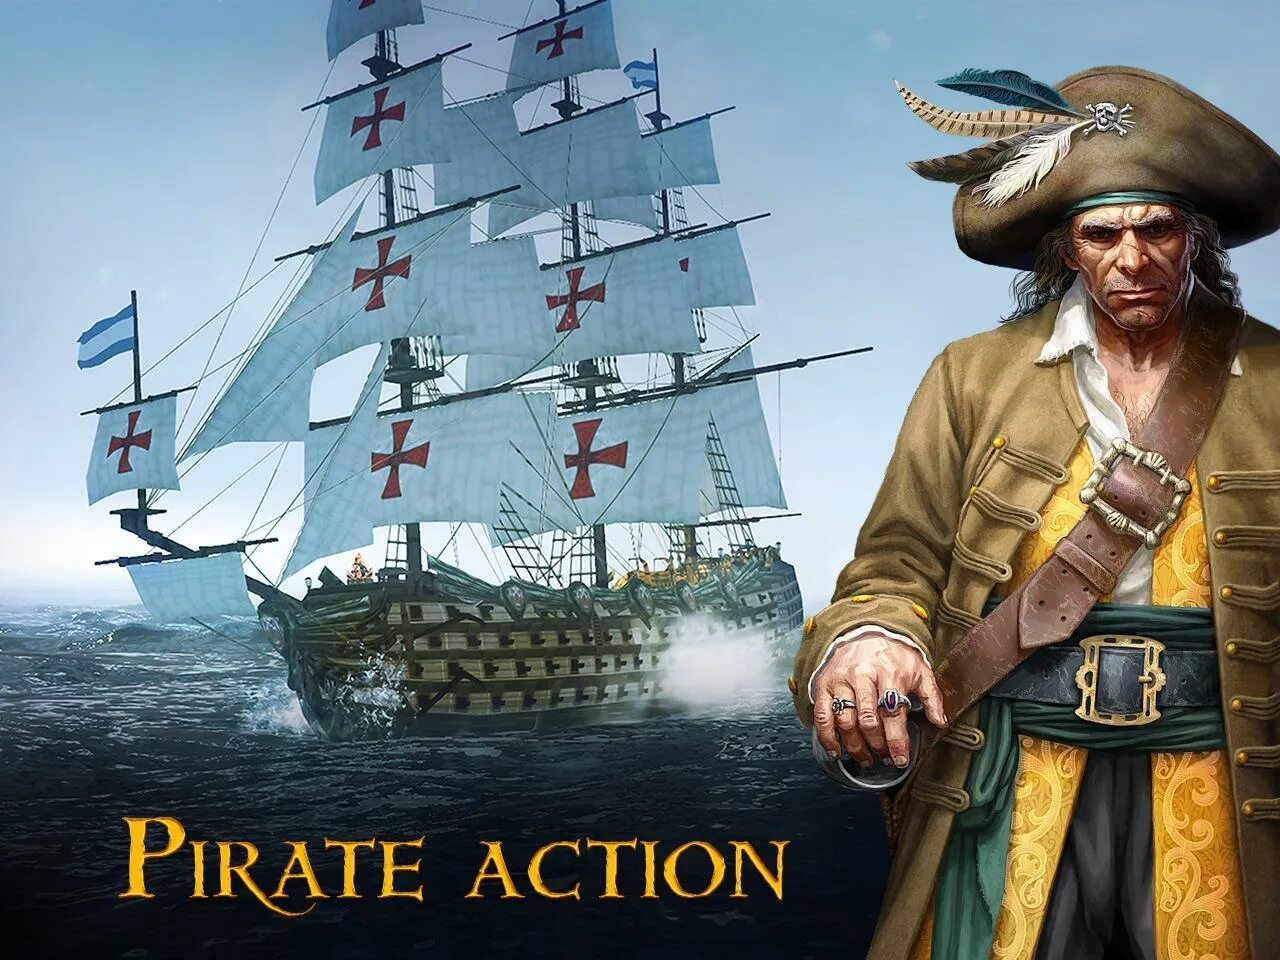 Tempest: Pirate Action корабль. Пират. Игра Tempest: Pirate Action RPG. Проект а пираты. Пиратская жизнь телеграмм